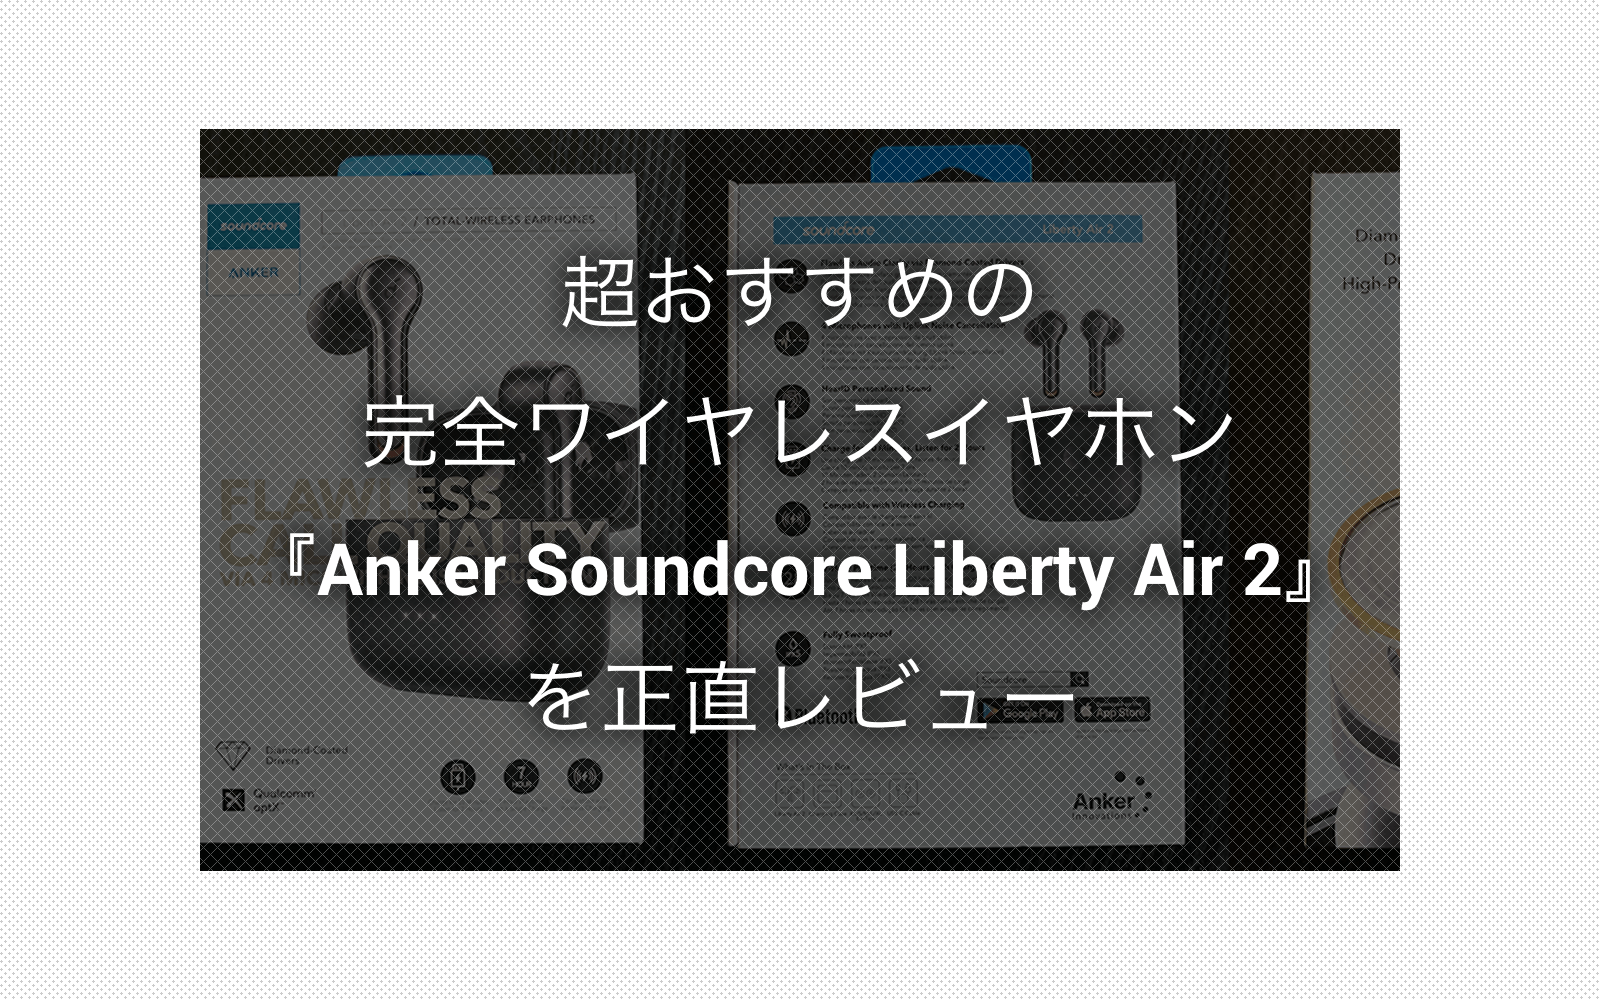 超おすすめの完全ワイヤレスイヤホン『Anker Soundcore Liberty Air 2』を正直レビュー